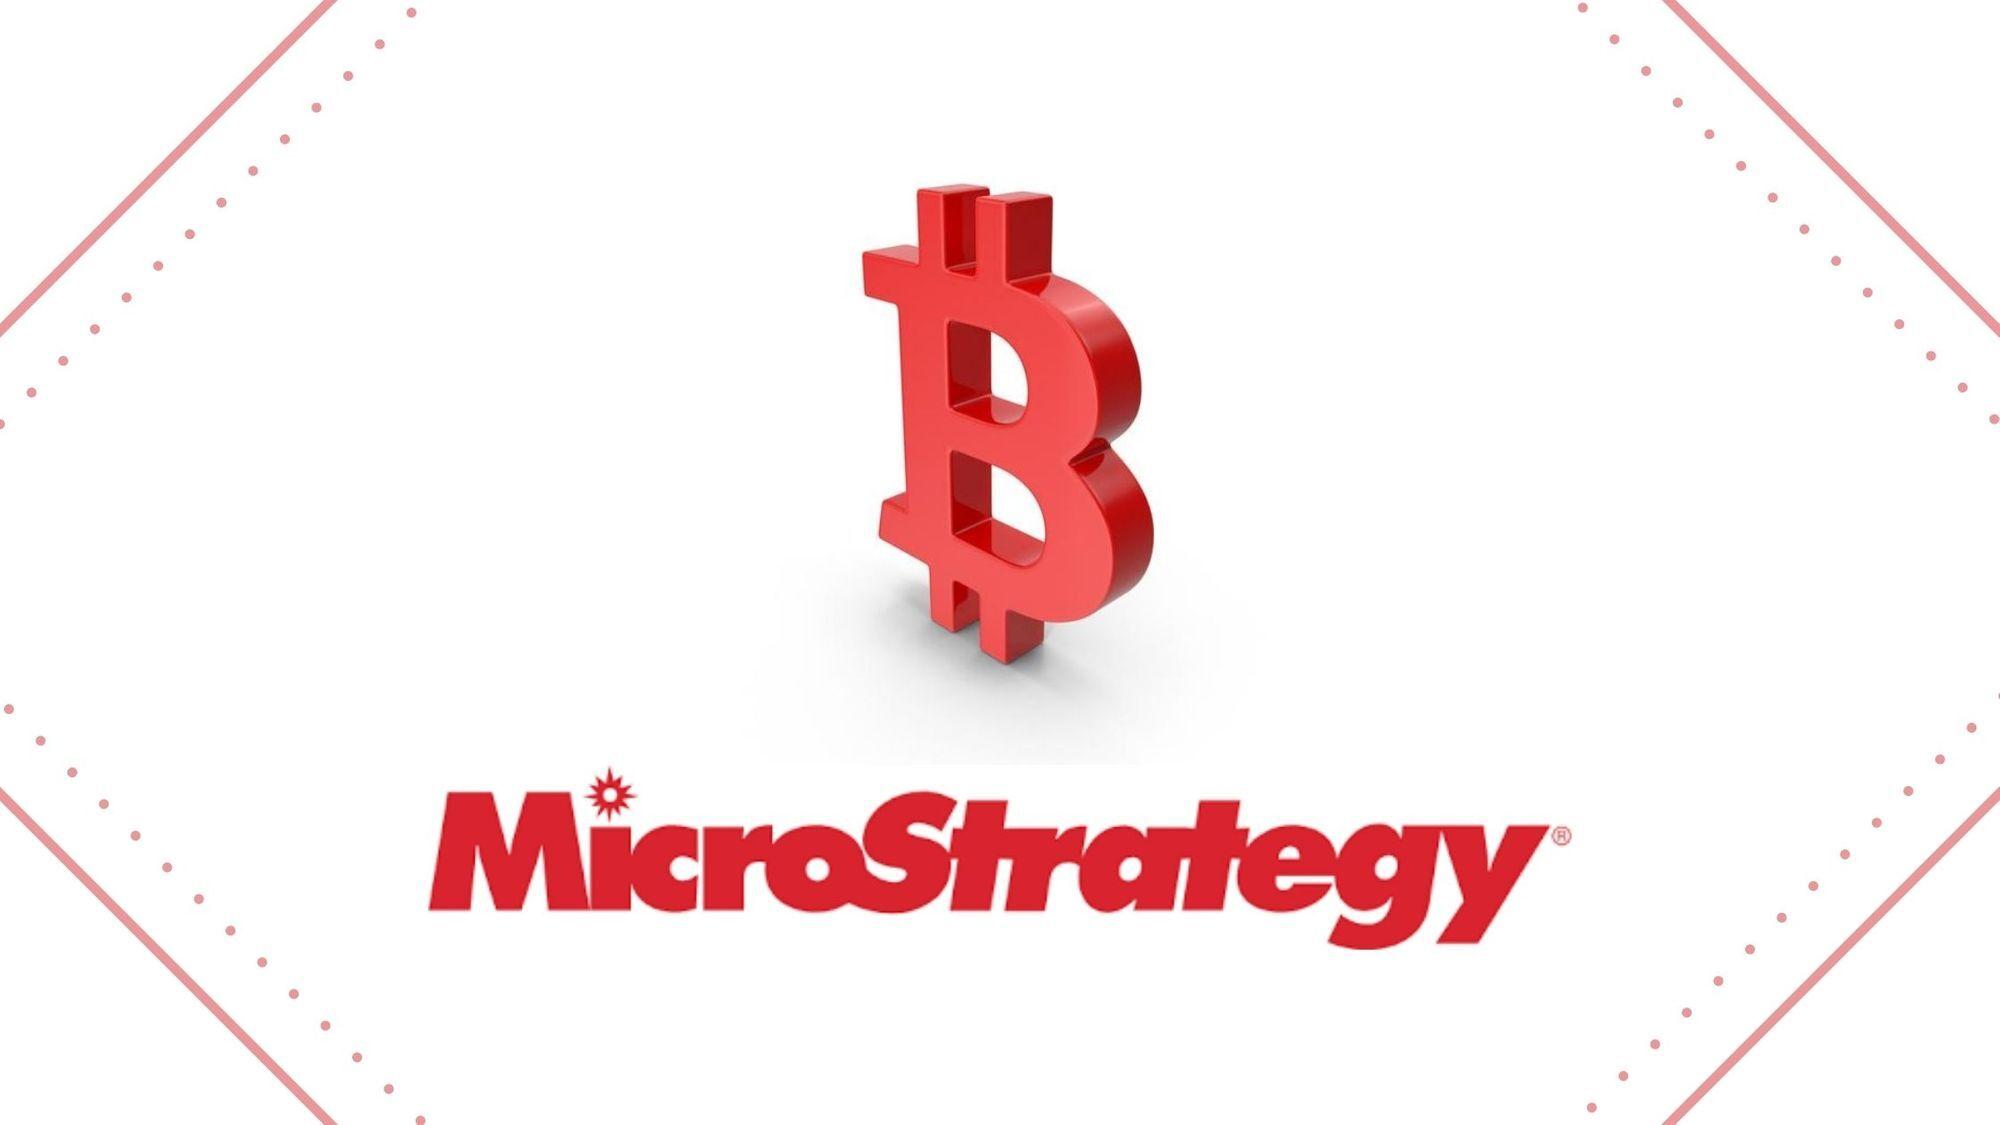 microstrategy-du-dinh-mo-ban-co-phieu-500-trieu-usd-de-mua-them-bitcoin